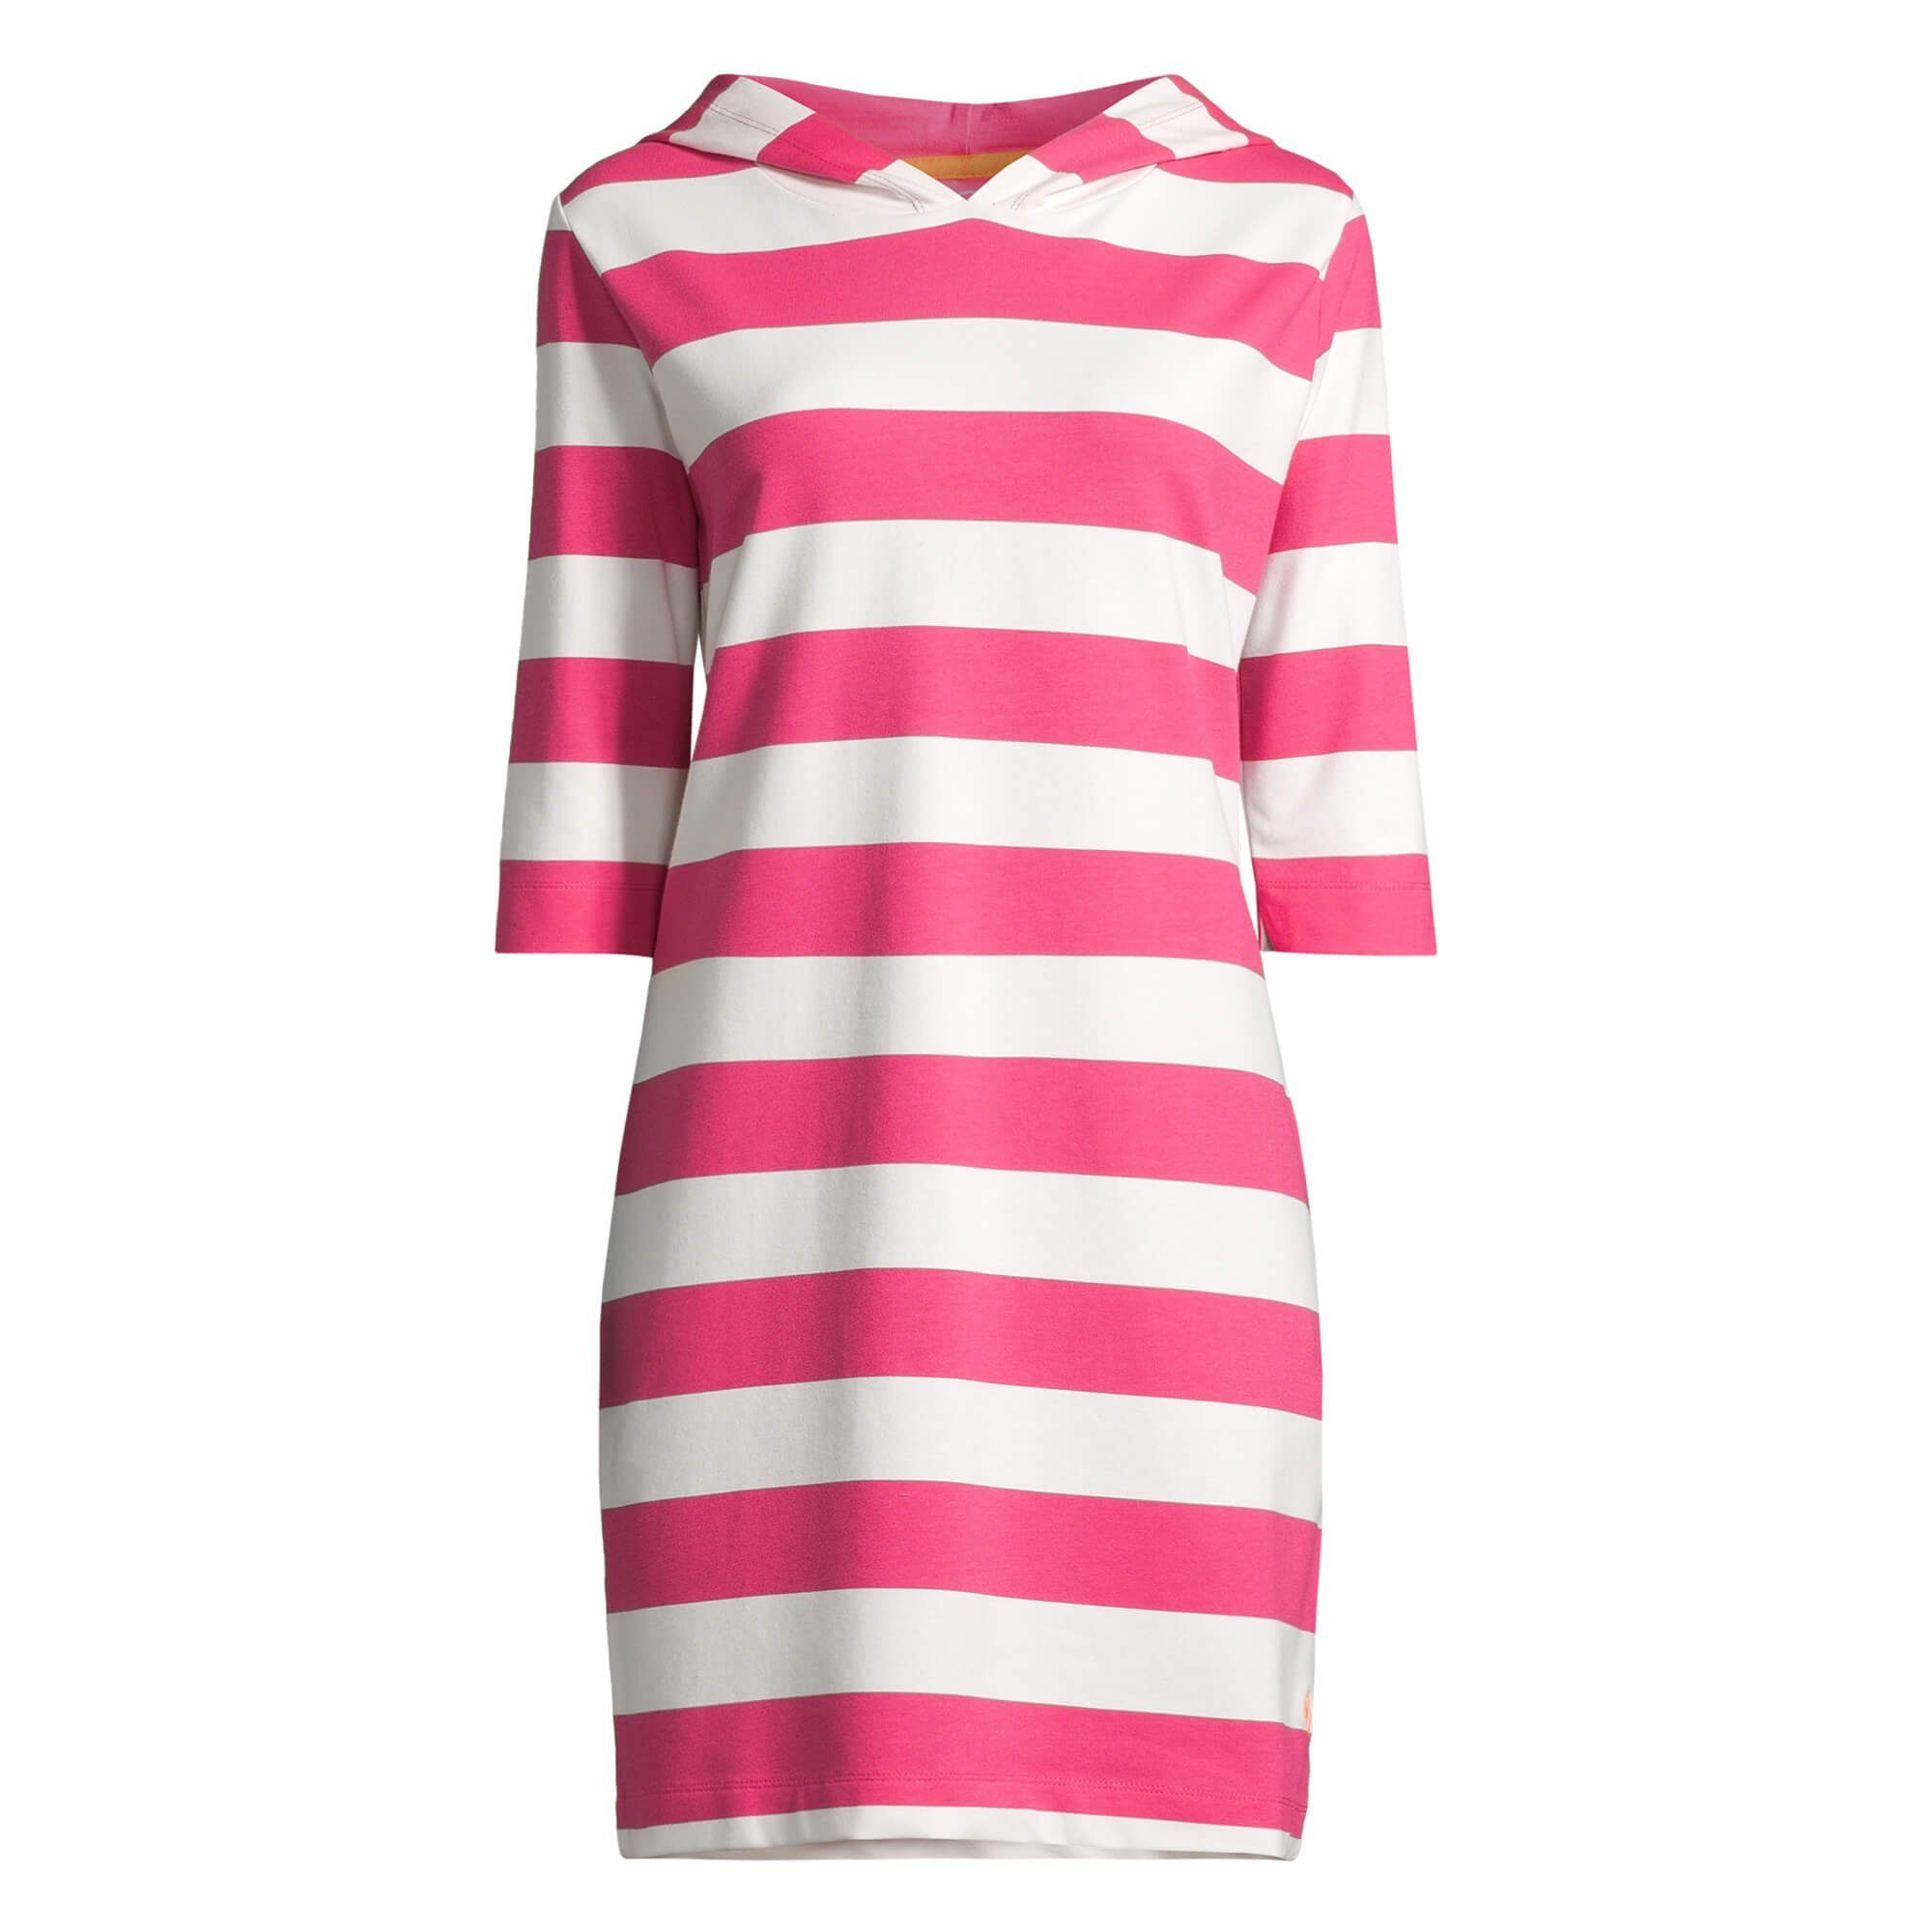 Hoodie-Kleid pink salzhaut Löövstick Block-Streifen / offwhite Shirtkleid 3/4-Arm Kapuzenkleid Damen